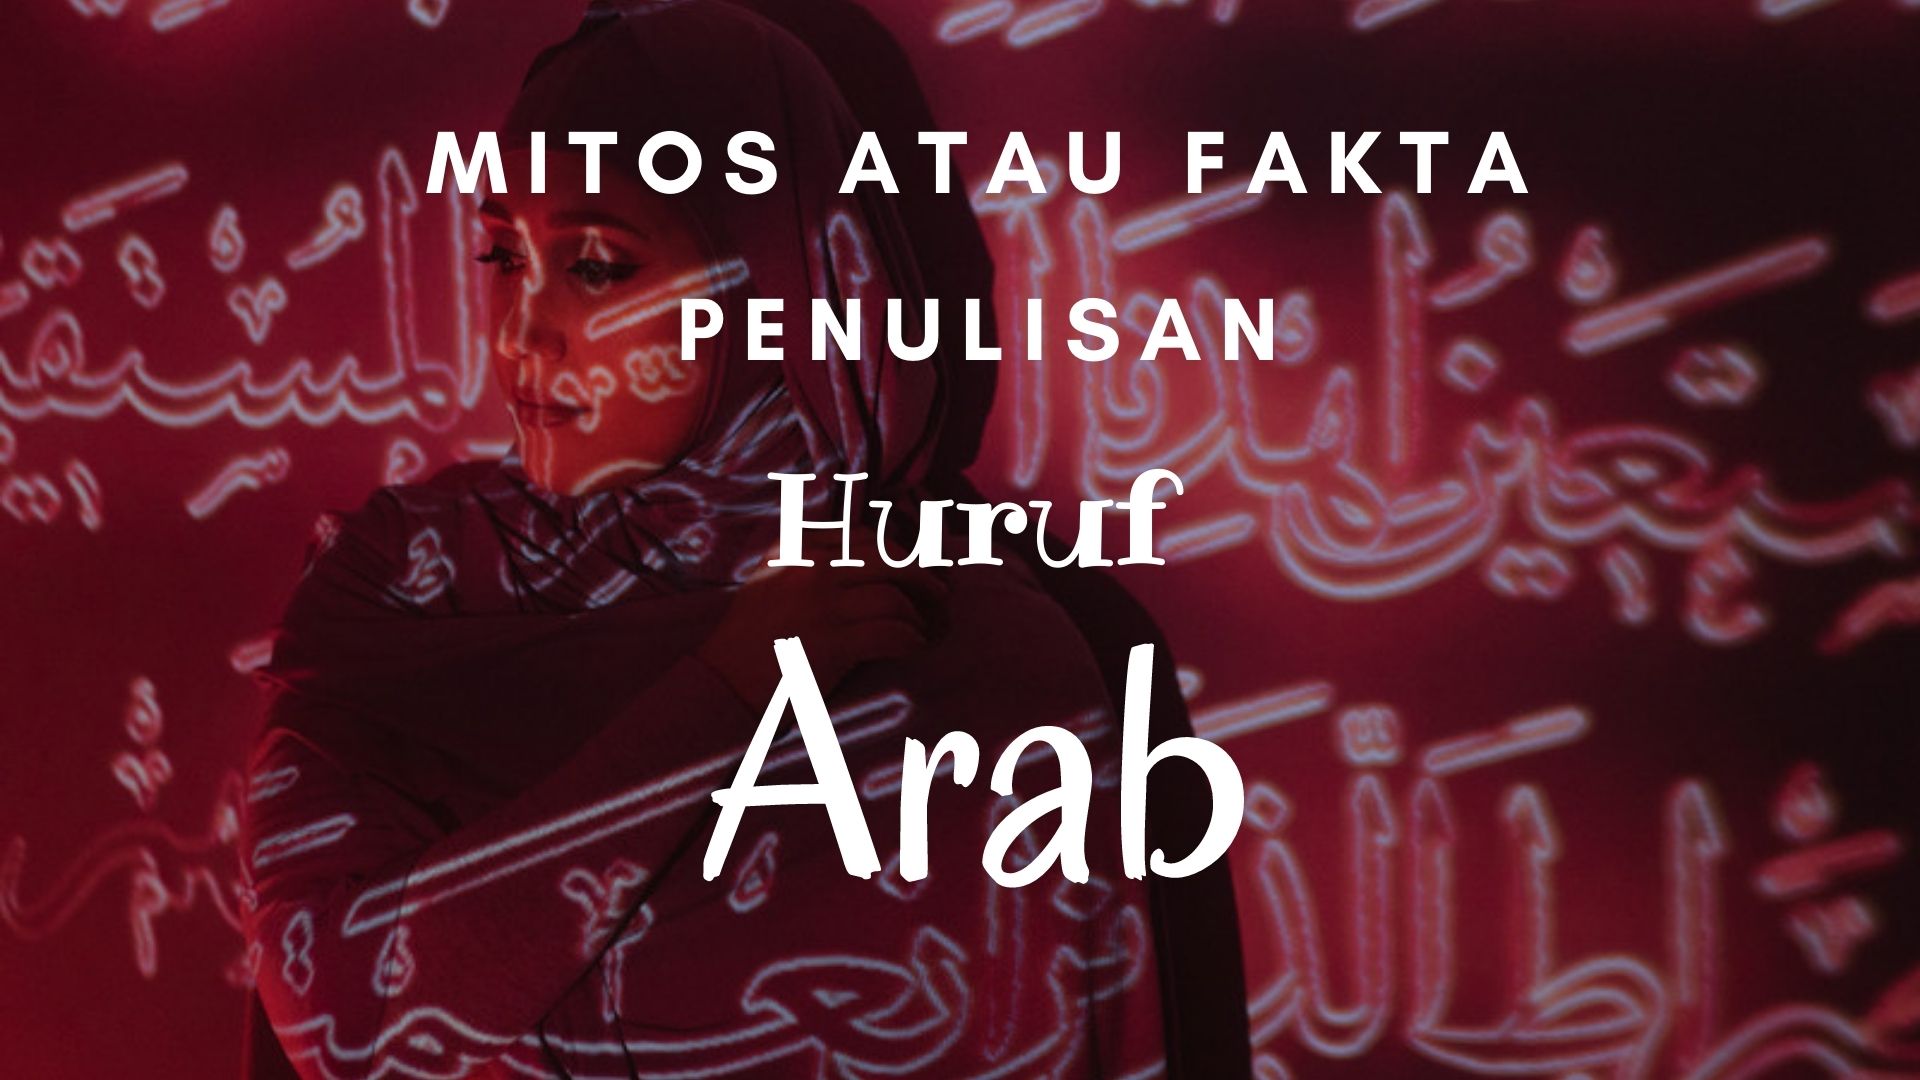 Mitos atau Fakta? Inilah Penyebab Penulisan Huruf Arab dimulai dari Sebelah Kanan
(ilustrasi)